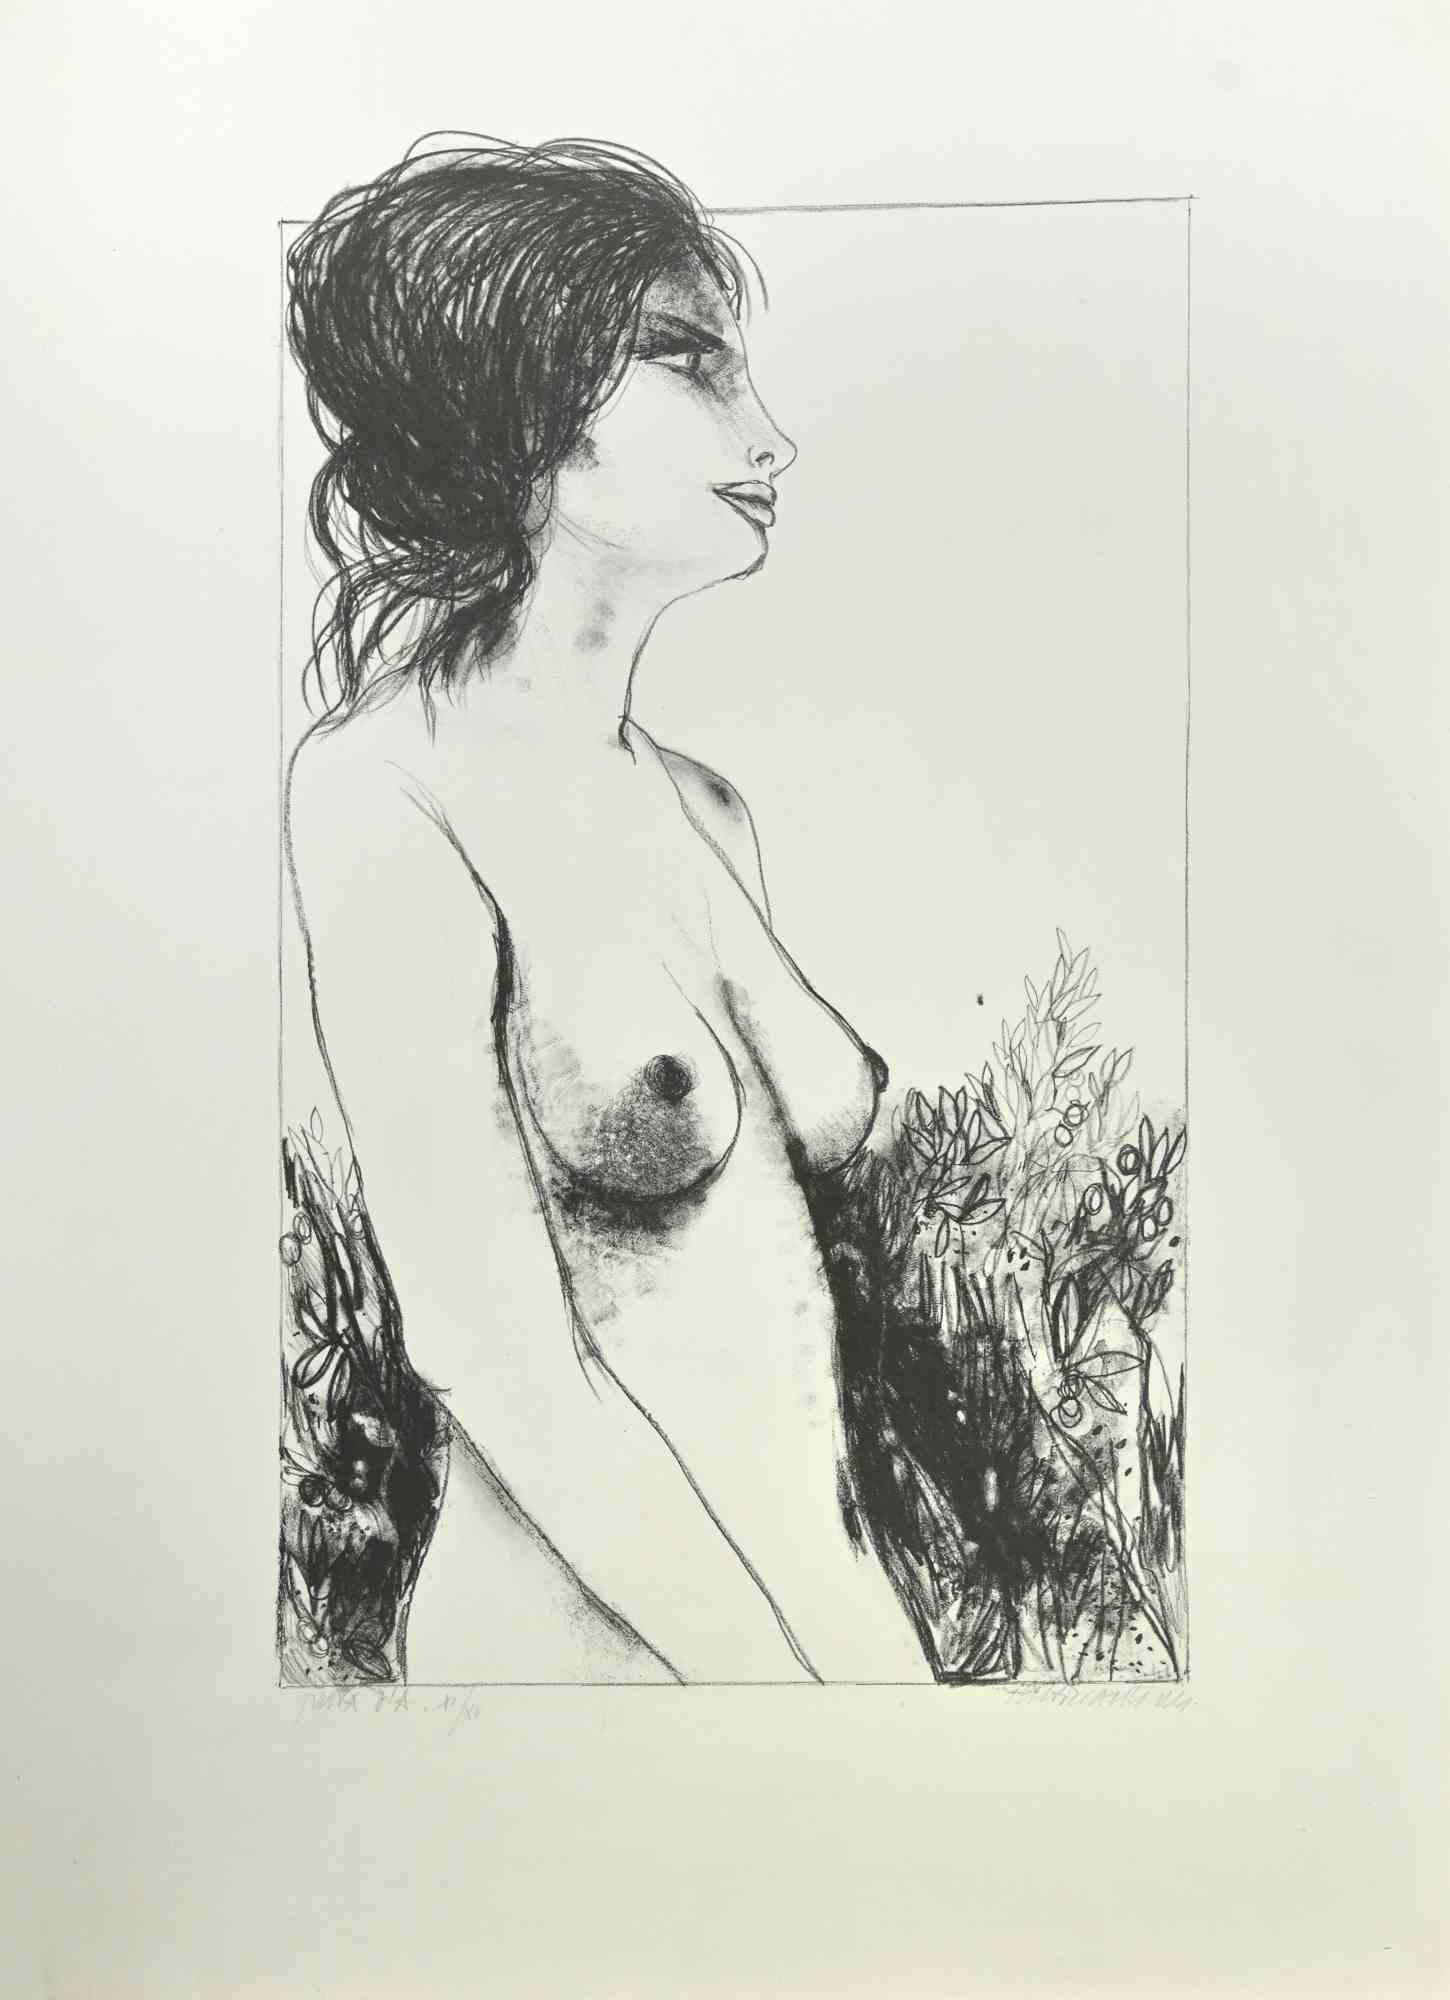 Nude of Woman ist eine Lithographie von Carlo Marcantonio aus den 1970er Jahren.

Dieser Druck ist handsigniert. Es handelt sich um eine Auflage von 50 Exemplaren plus einige Probedrucke, nummeriert 11/15.

Drucke sind die günstigsten und